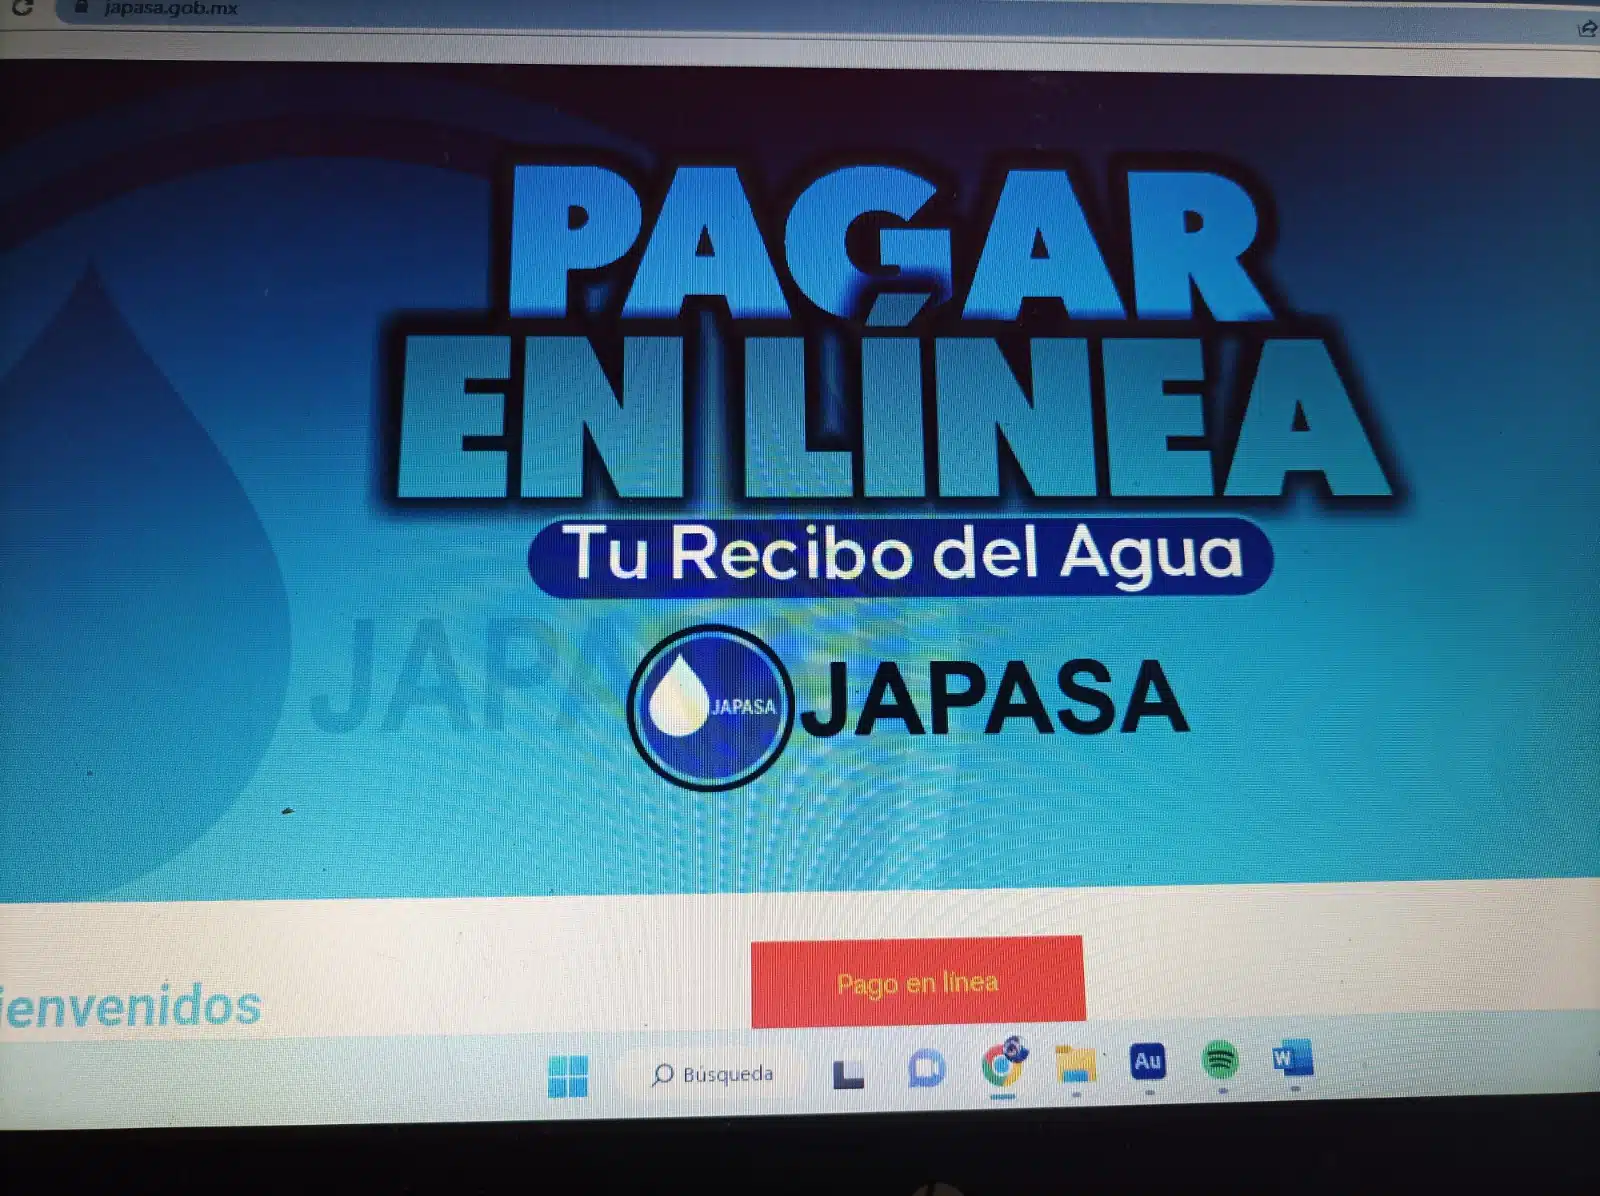 Retoman pago en línea en Japasa; el 30% usa este método para cubrir su consumo